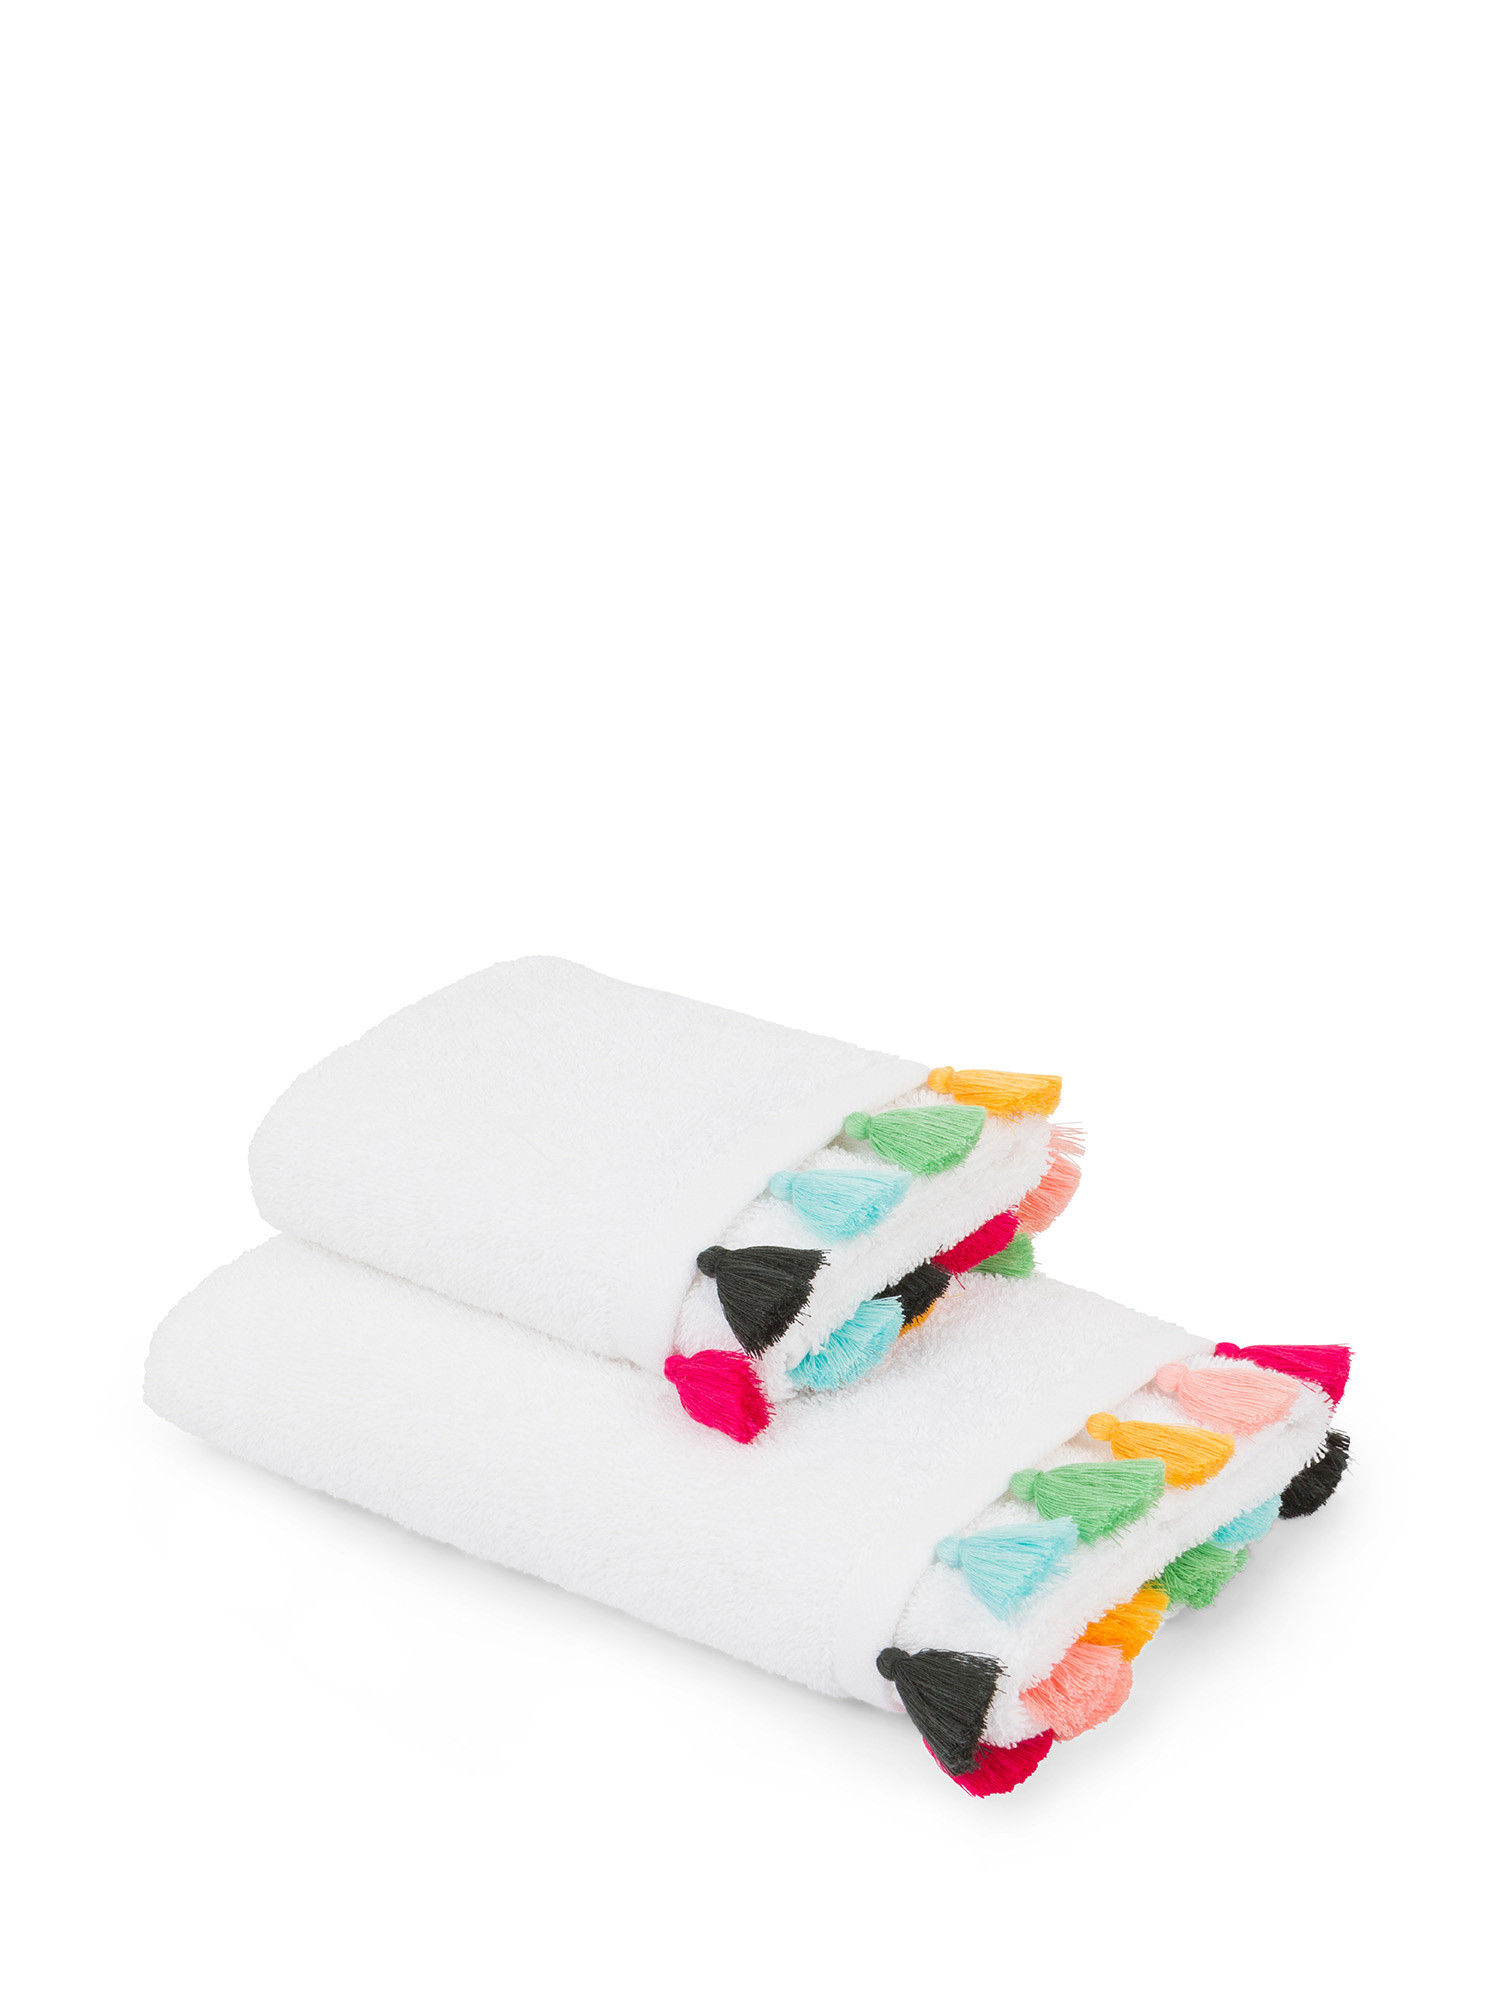 Asciugamano spugna di cotone con applicazioni, Bianco, large image number 0